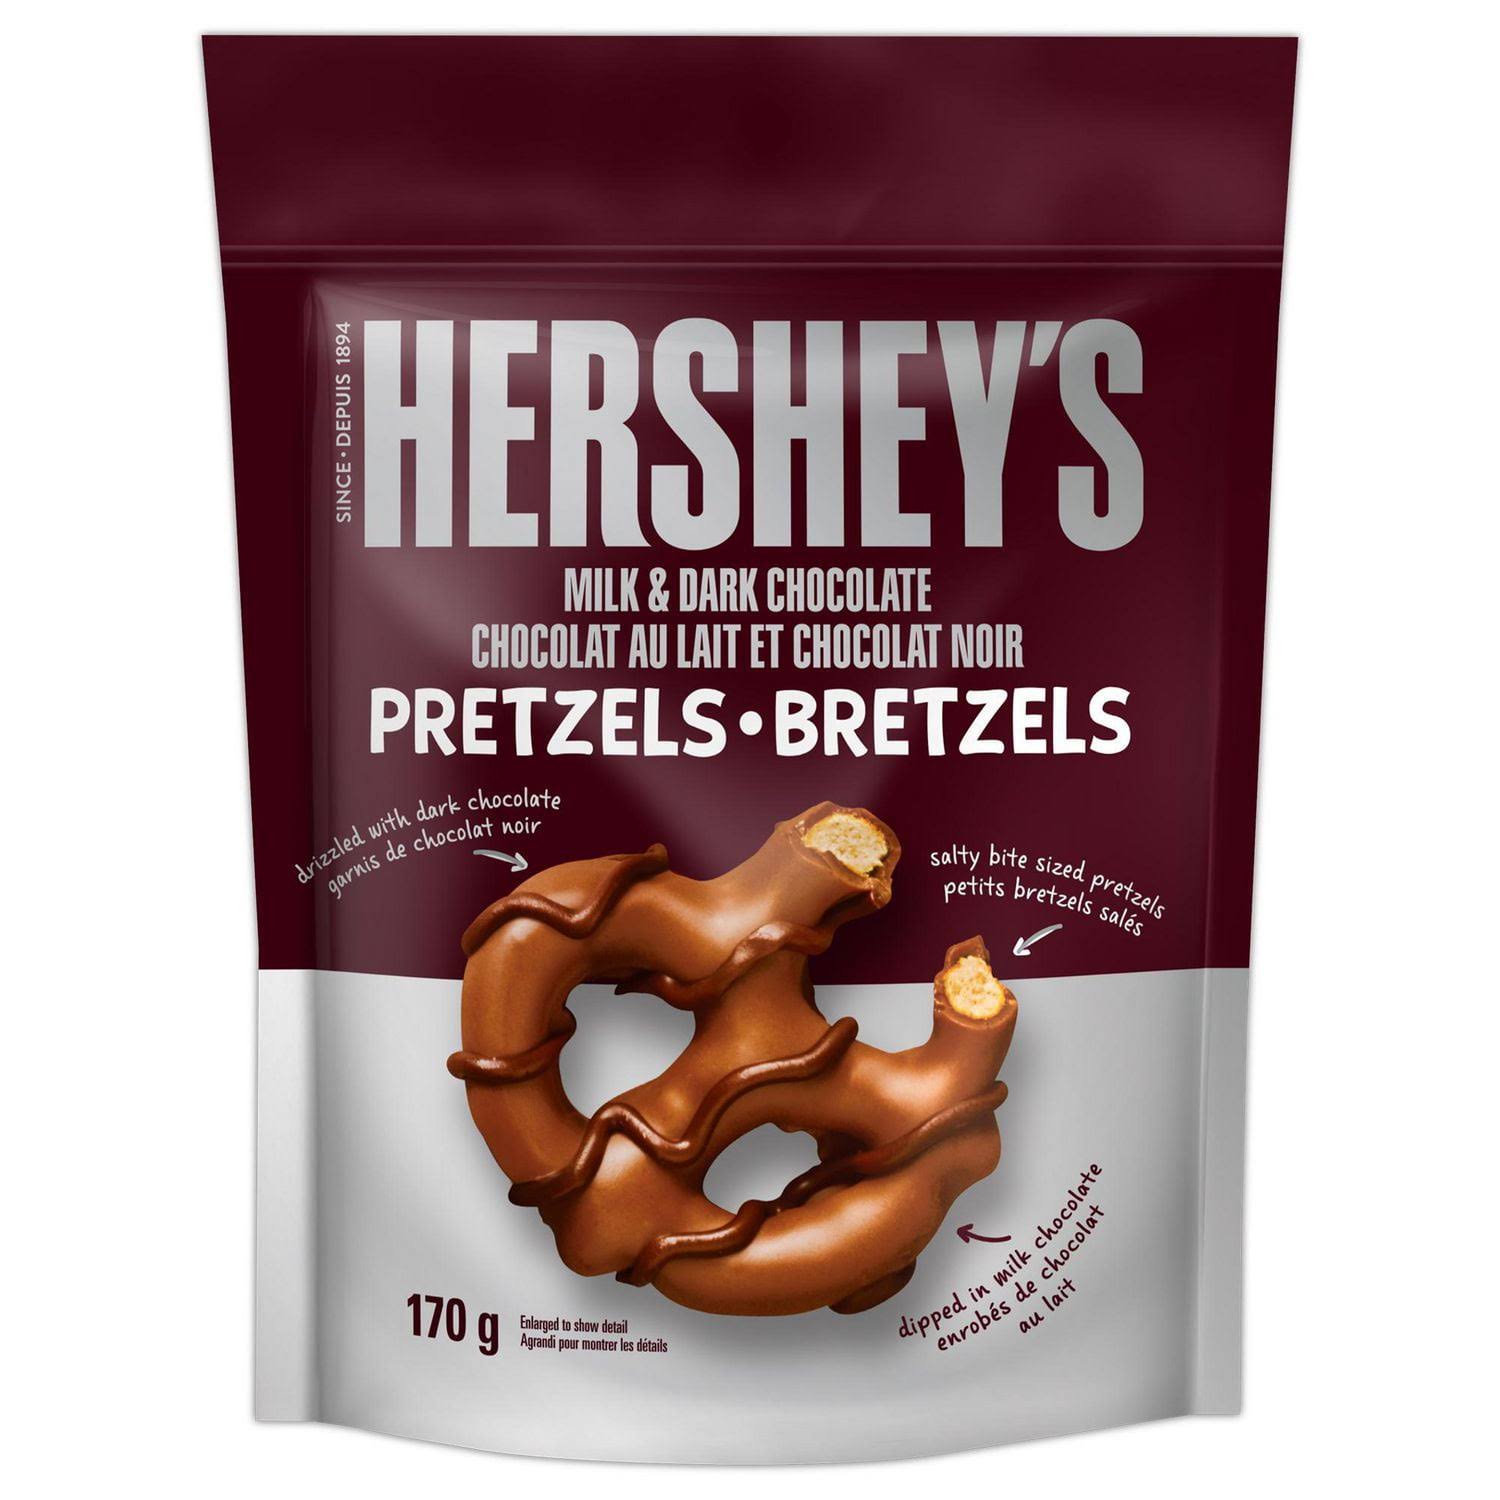 Hershey's Milk & Dark Chocolate Pretzels (170 g)